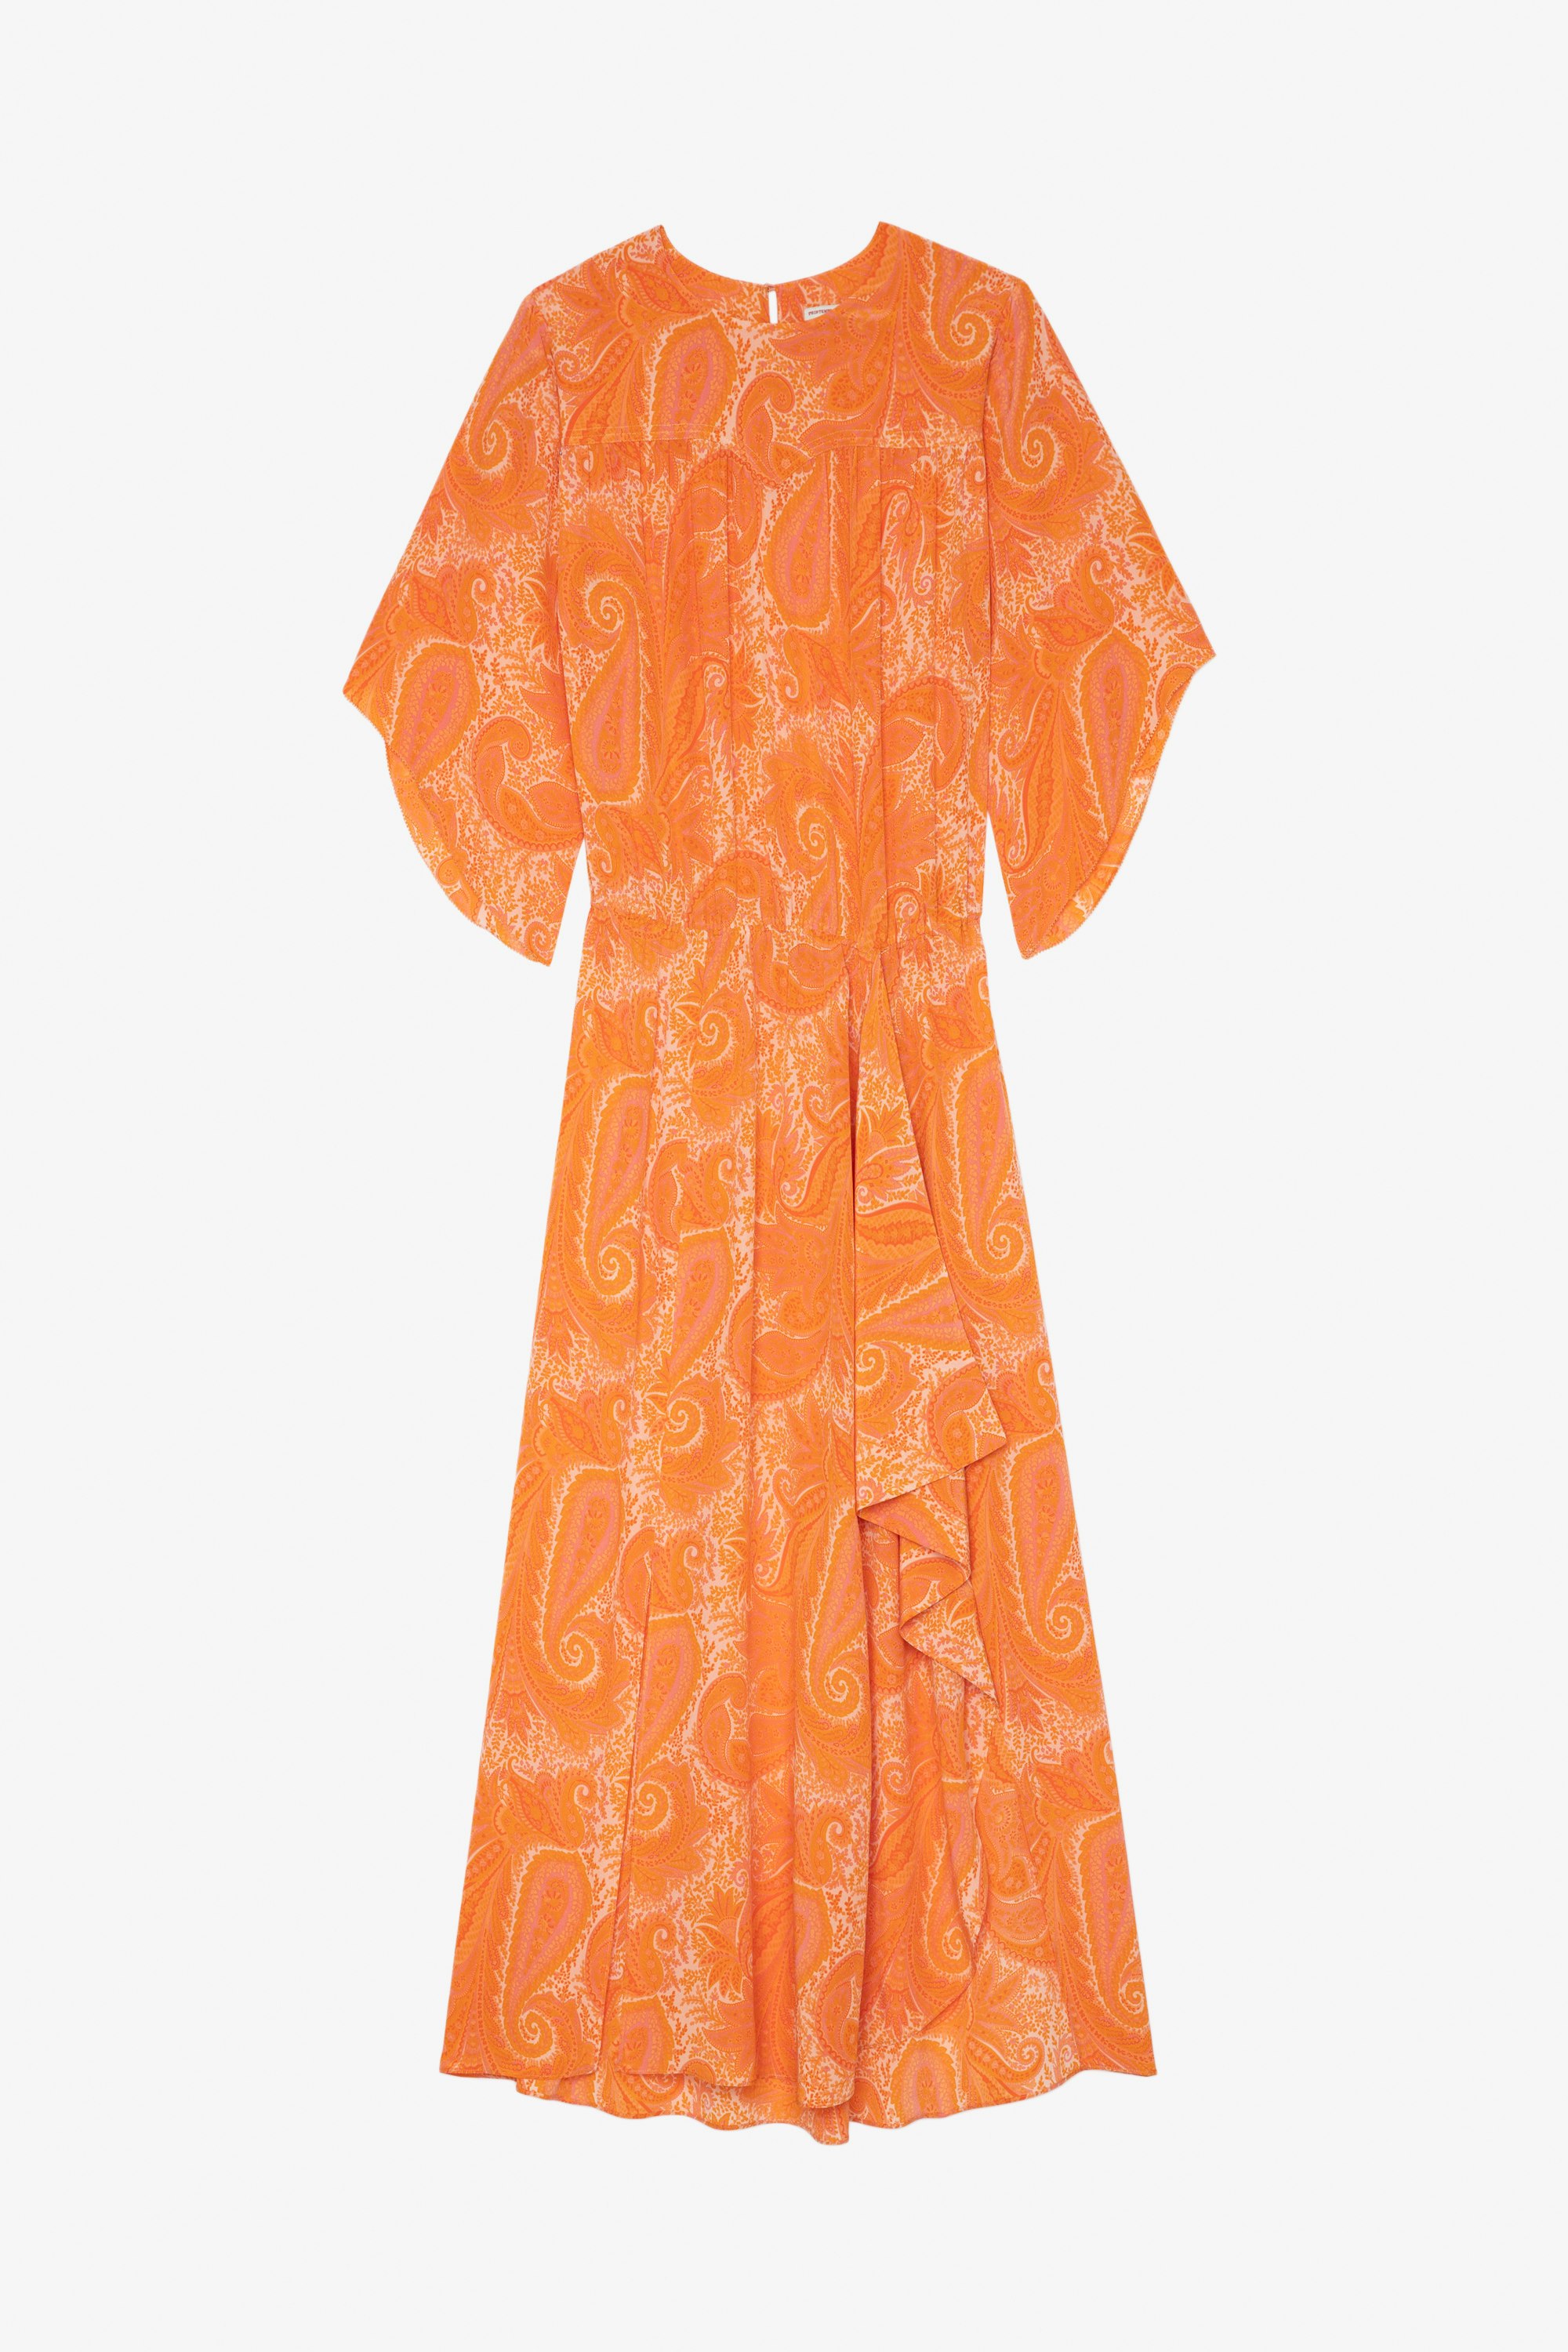 Kleid Rusty Langes, asymmetrisches und drapiertes Damenkleid aus orangefarbener Seide mit Paisleymuster und Gürtel